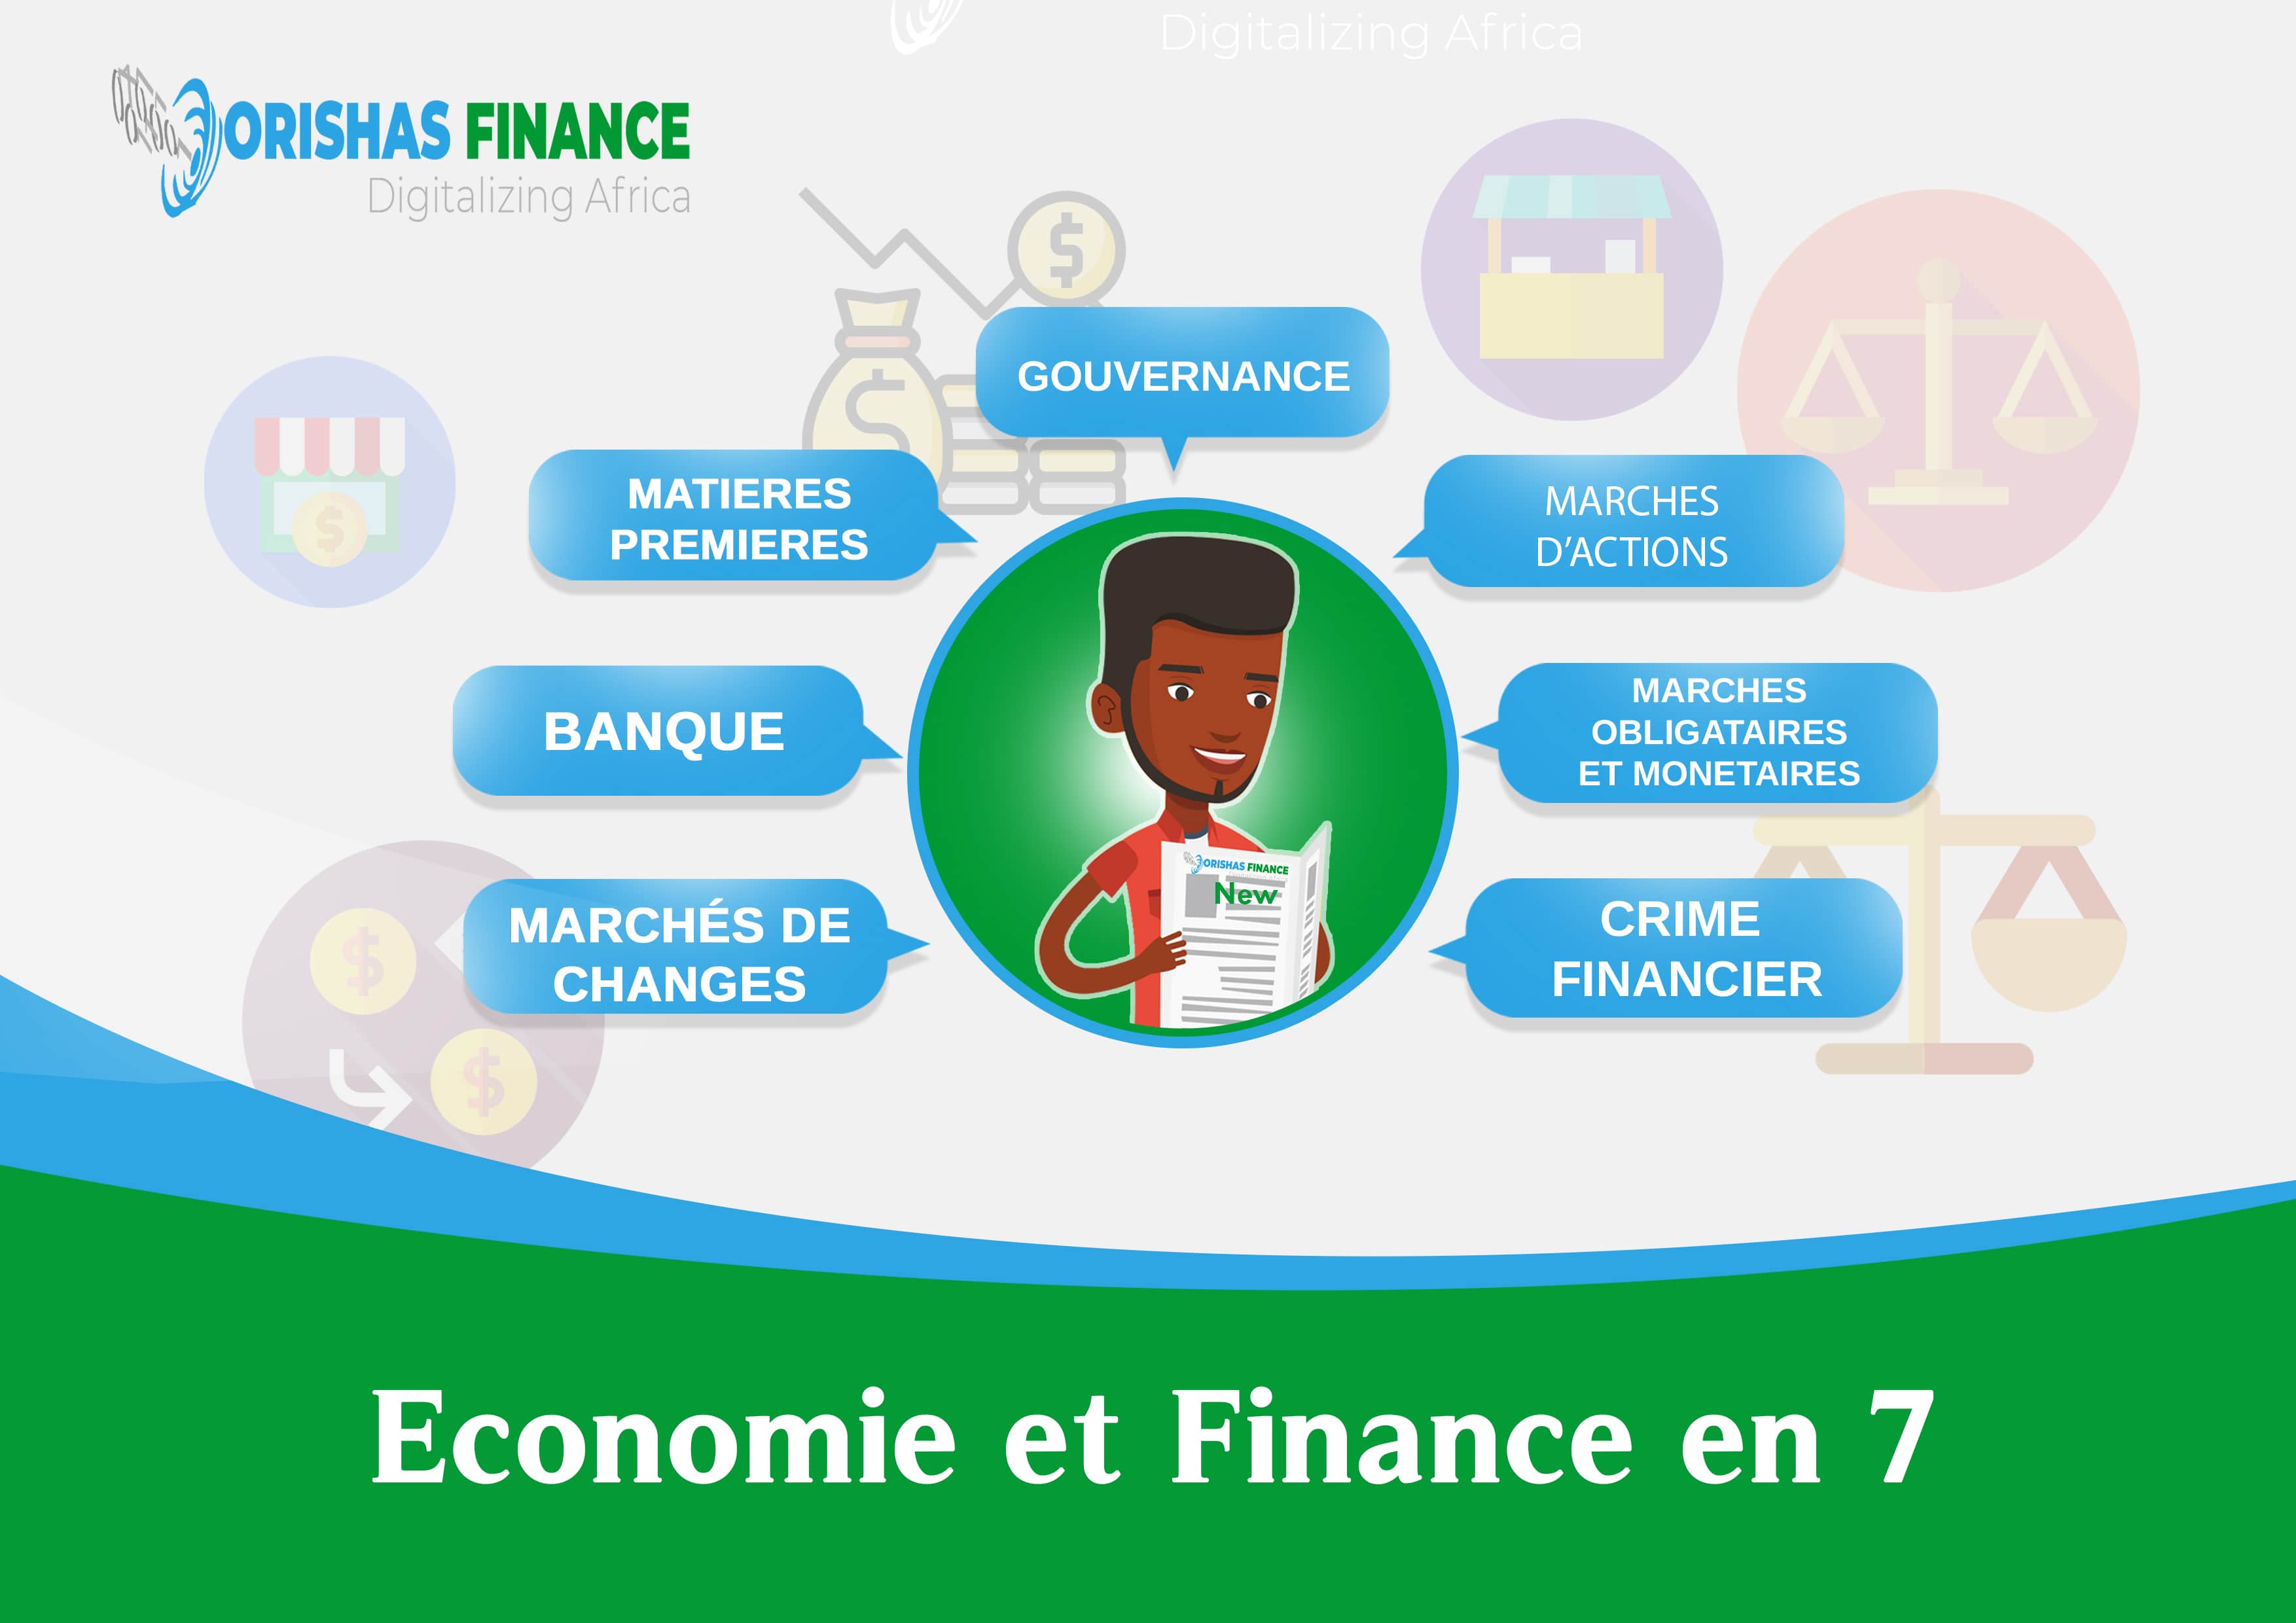 Economie et finance en 7 du 29 Mars au 02 Avril 2021 : Orishas-finance